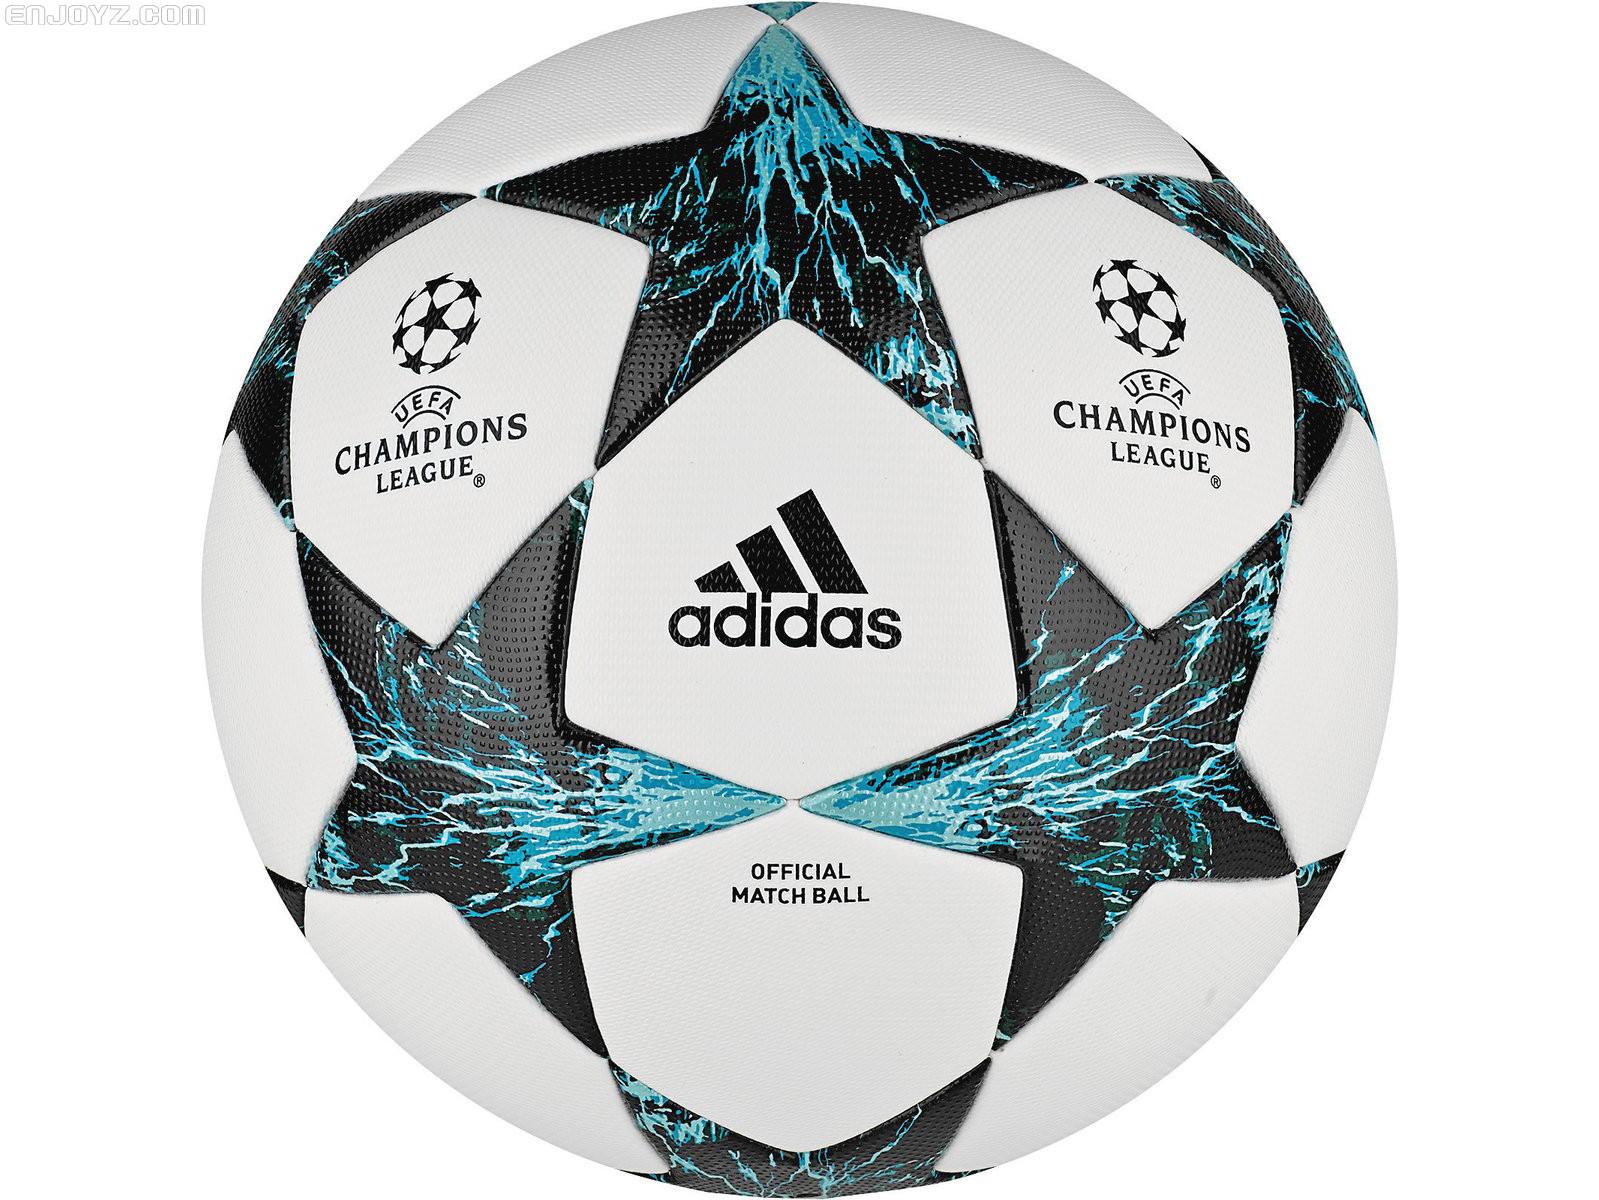 2017欧冠决赛比赛用球 2017/18赛季欧冠联赛比赛用球遭曝光